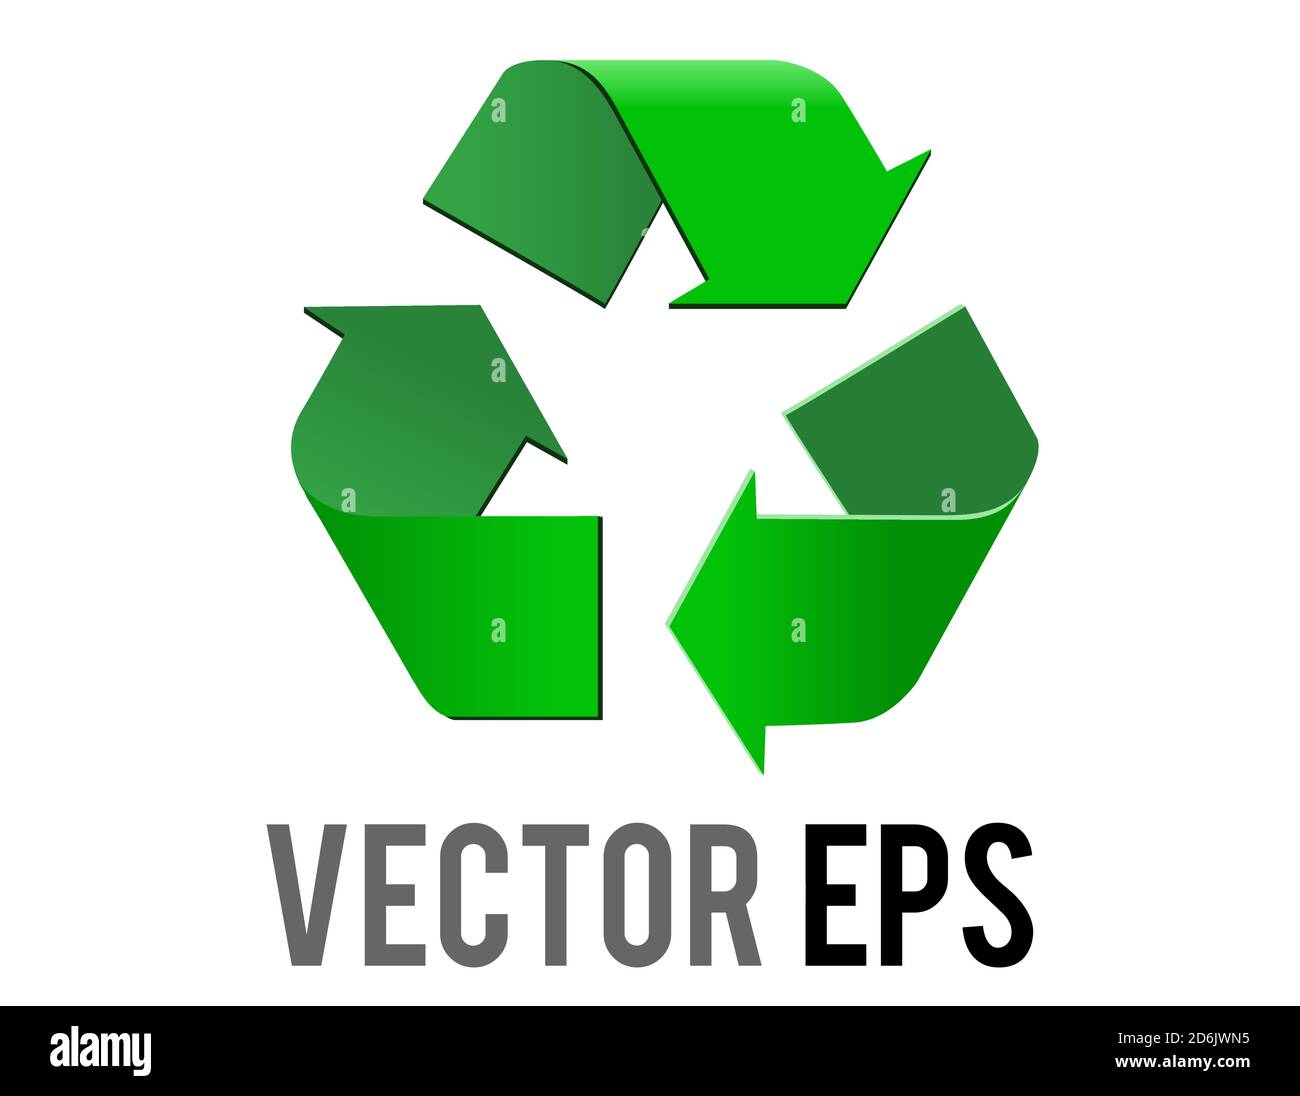 Icona del simbolo di riciclaggio universale verde del vettore isolato, tre frecce che puntano in senso orario in una forma triangolare Illustrazione Vettoriale